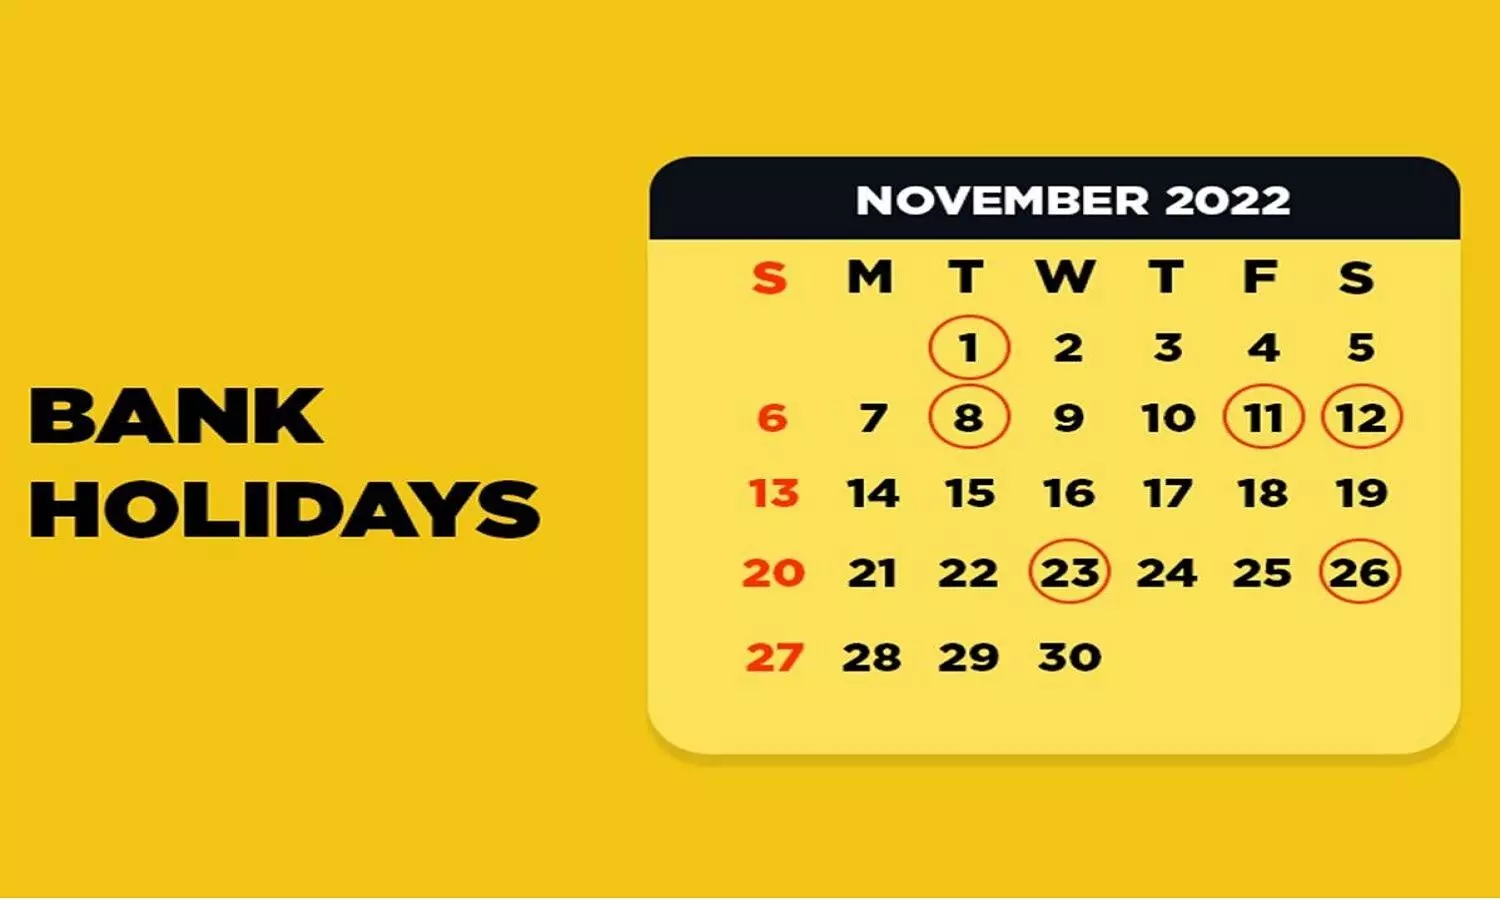 Bank Holidays November List 2022: 7 नवंबर से बैंक की छुट्टियां शुरू, फटाफट देखे पूरी लिस्ट